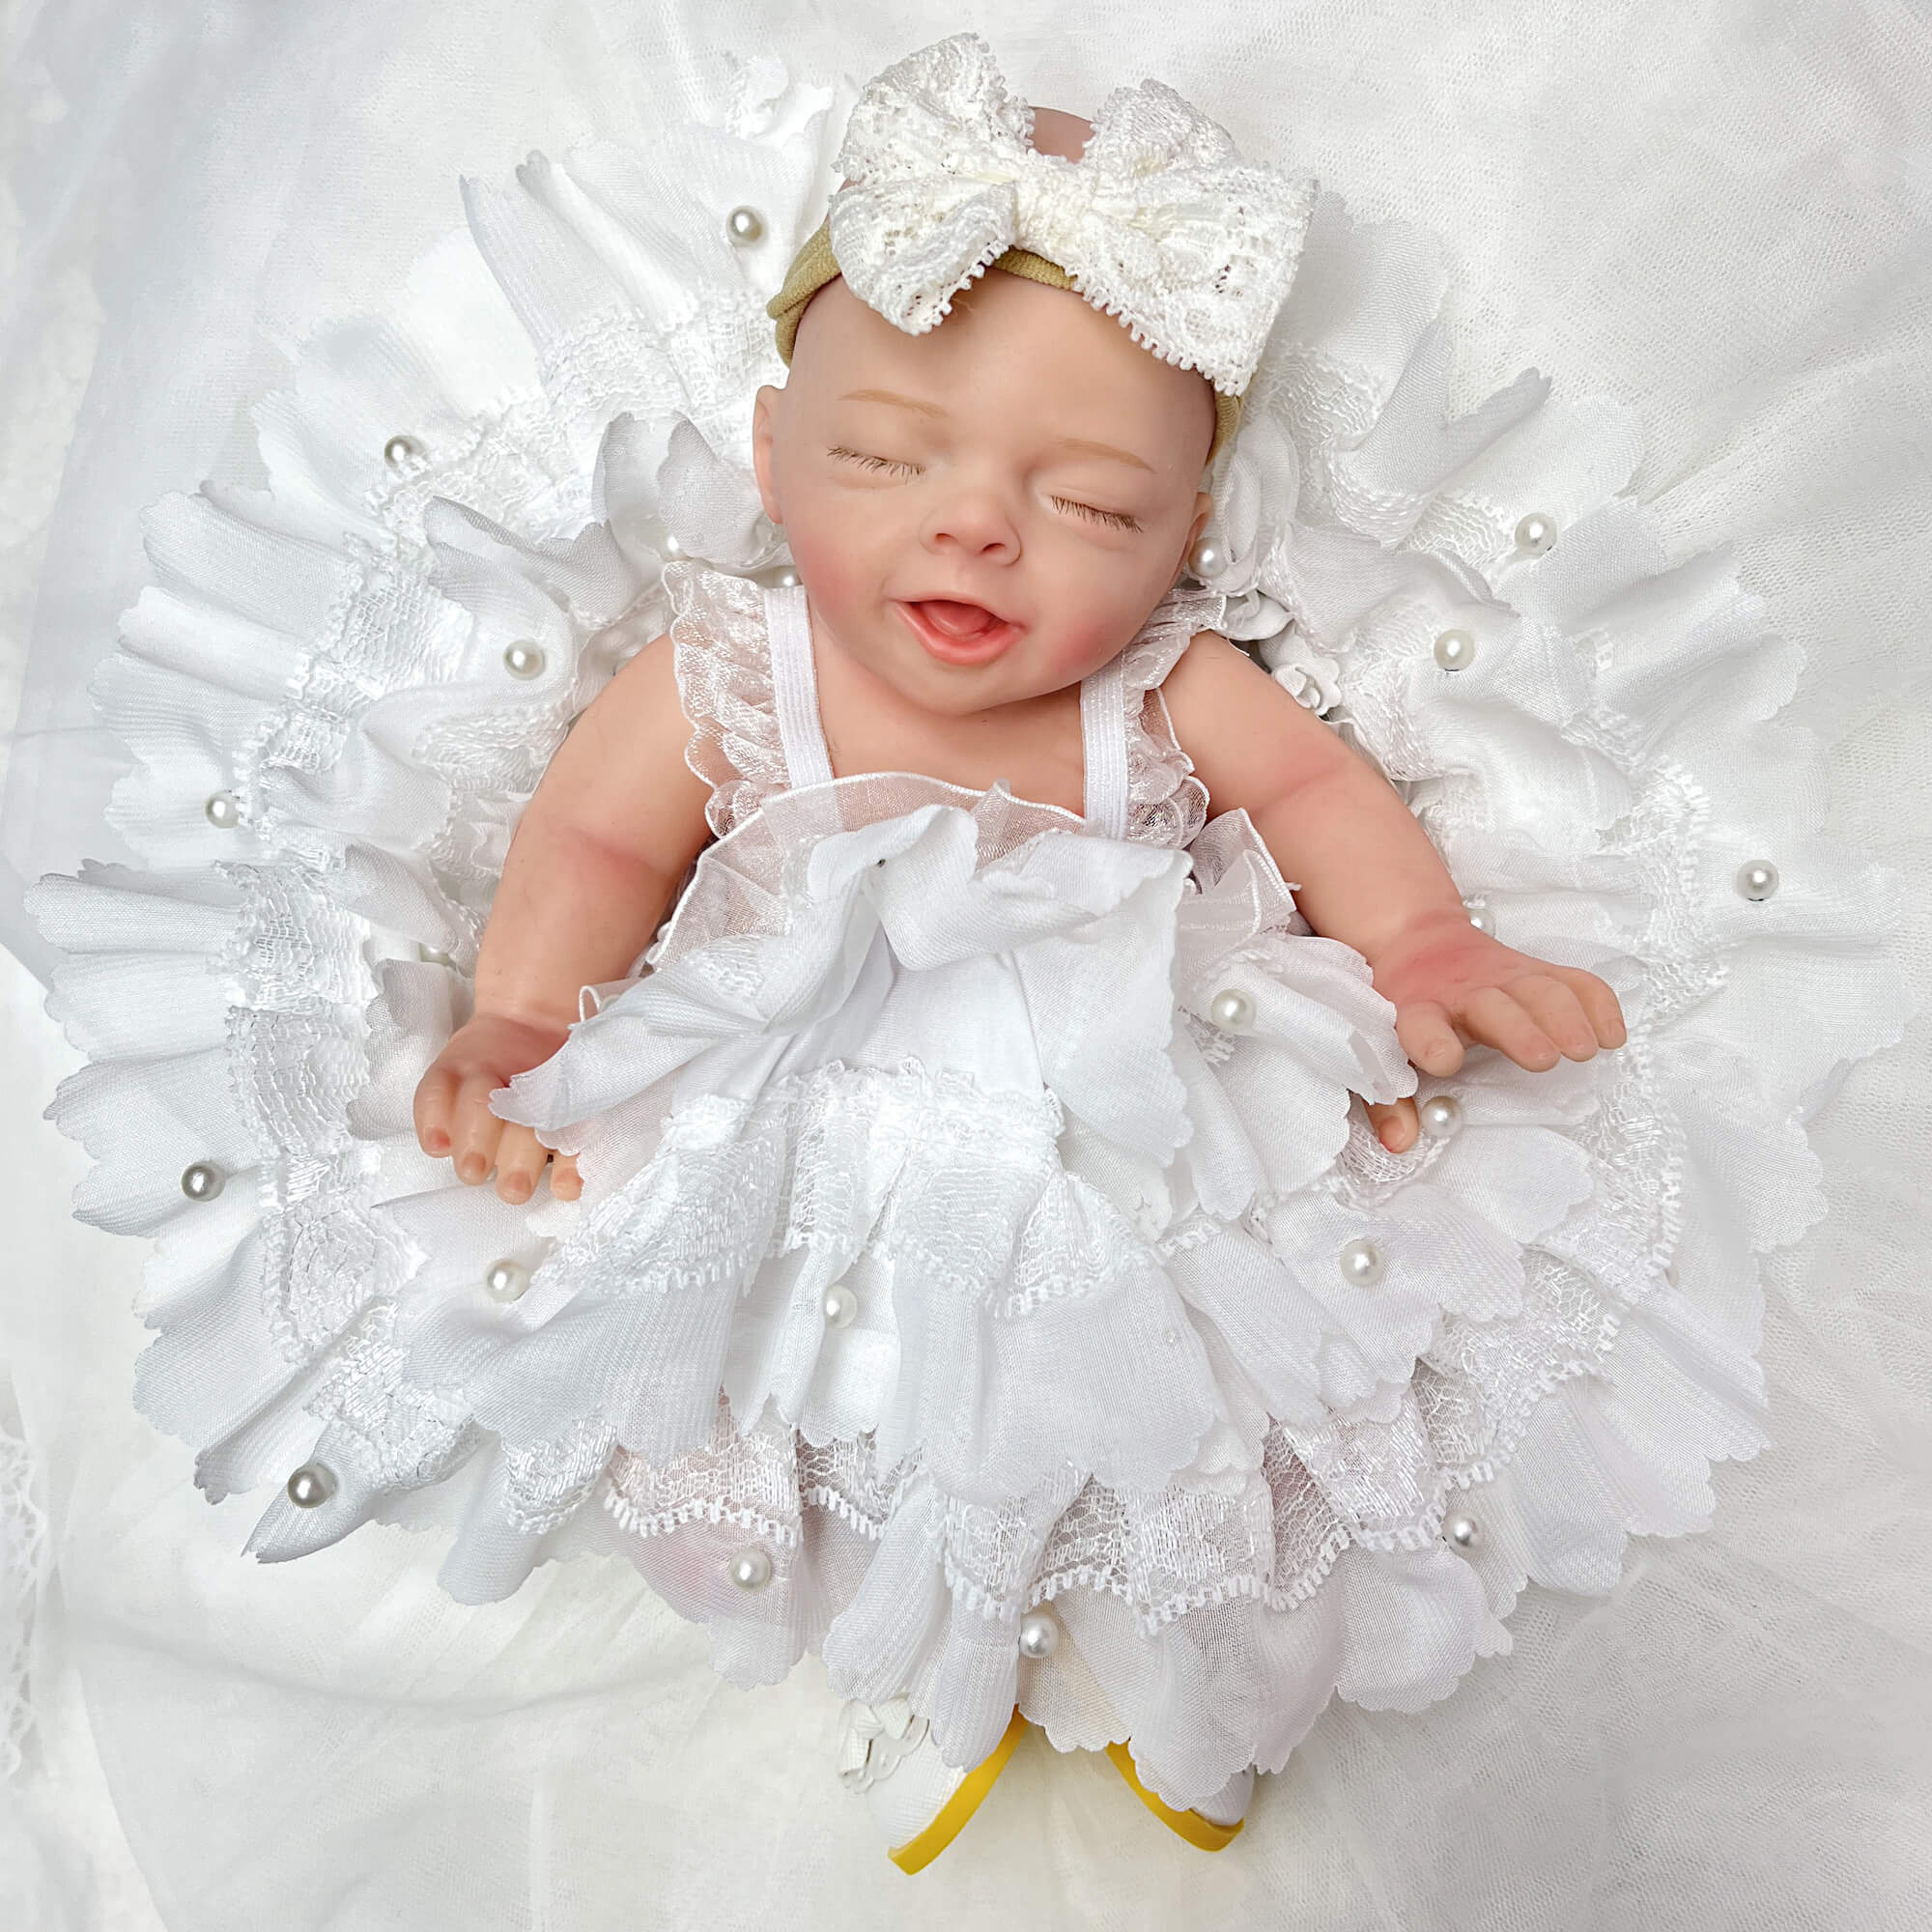 REBORN BABY DOLLS Realistic Newborn Baby Doll Silicone Lifelike